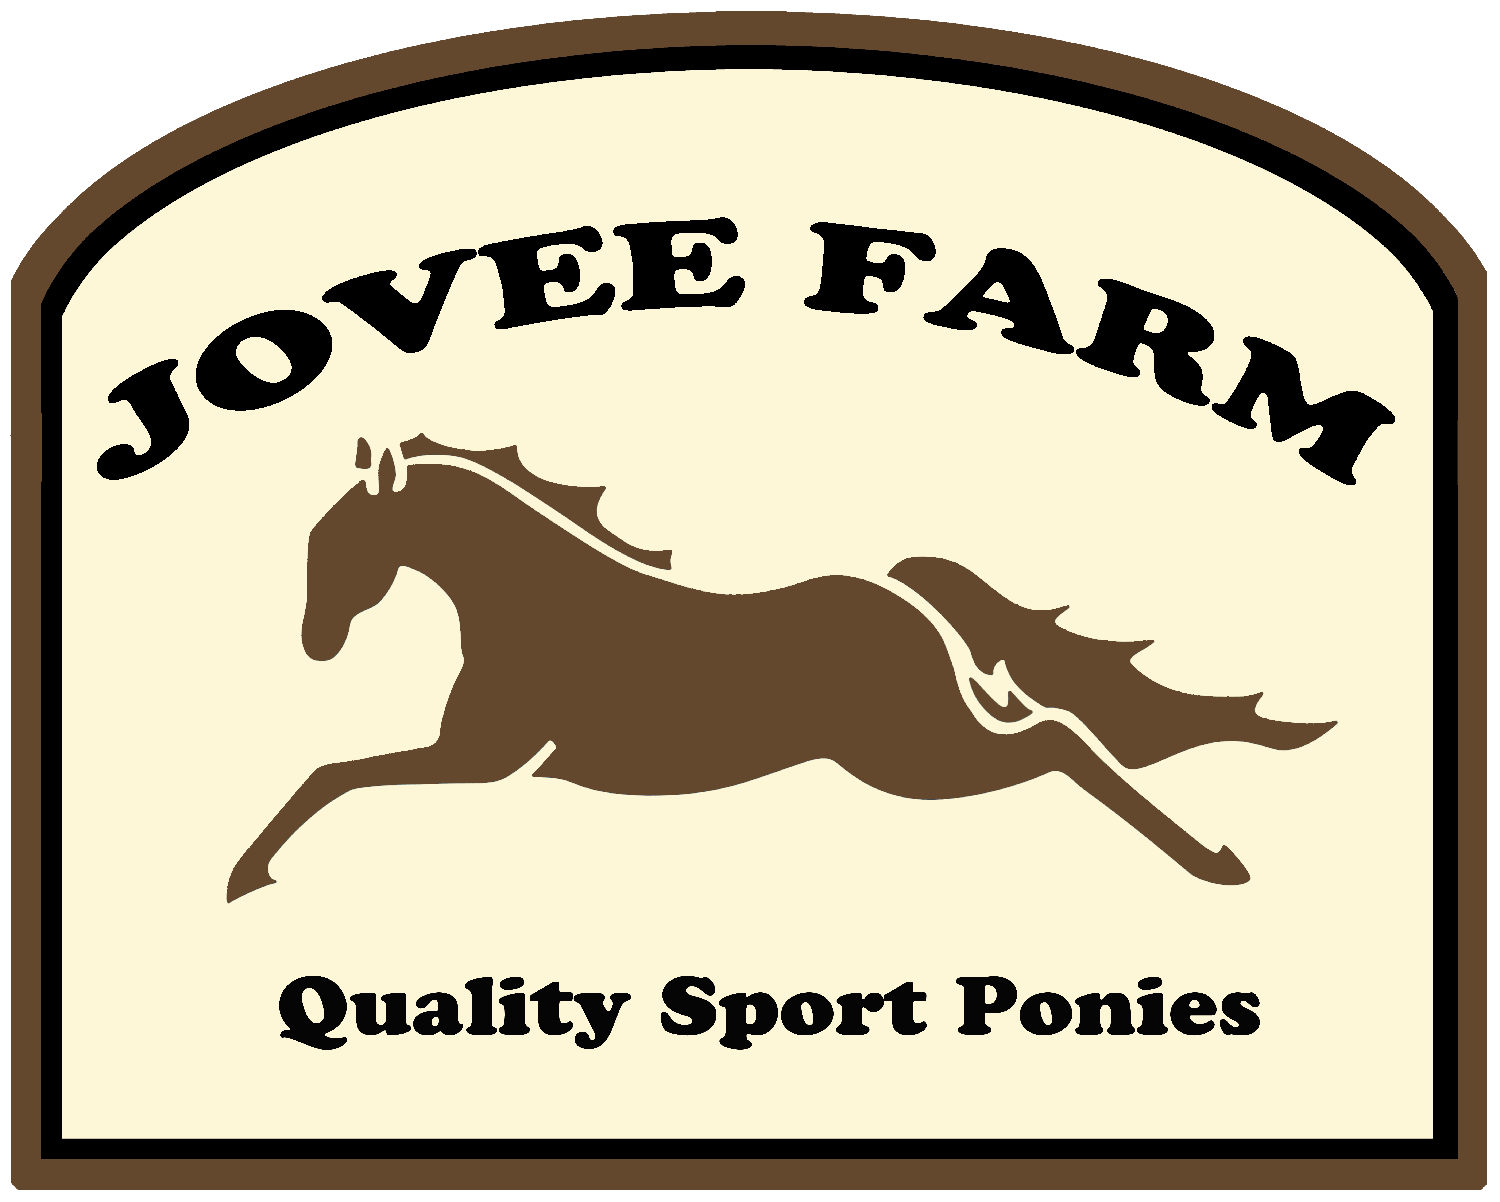 Jovee Farm Ponies